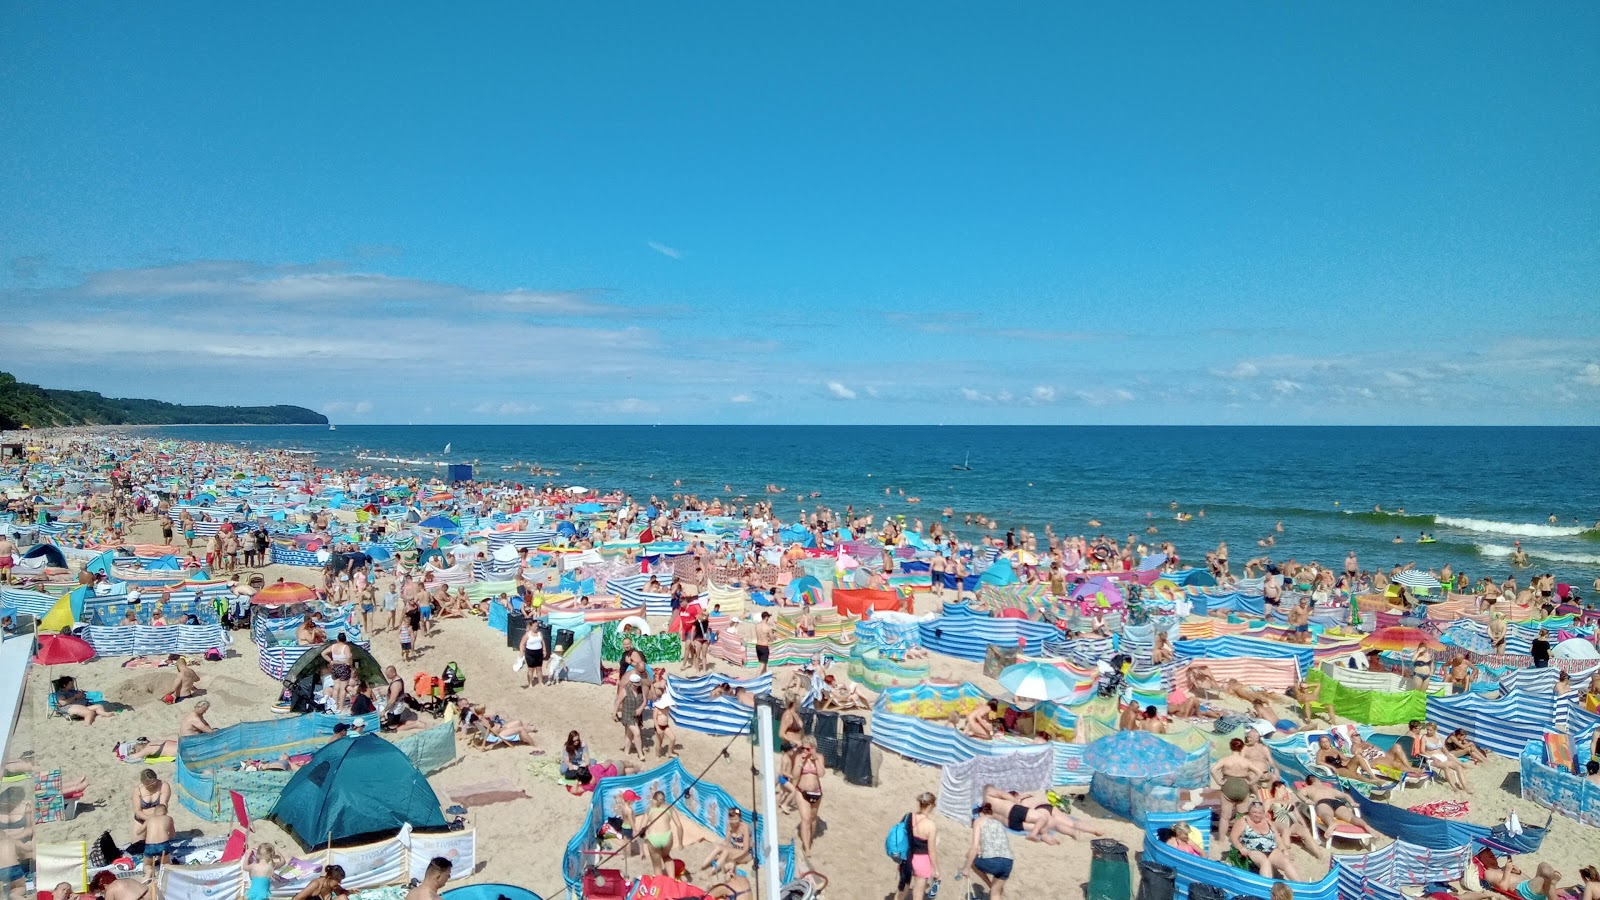 Fotografie cu Wladyslawowo Beach - locul popular printre cunoscătorii de relaxare